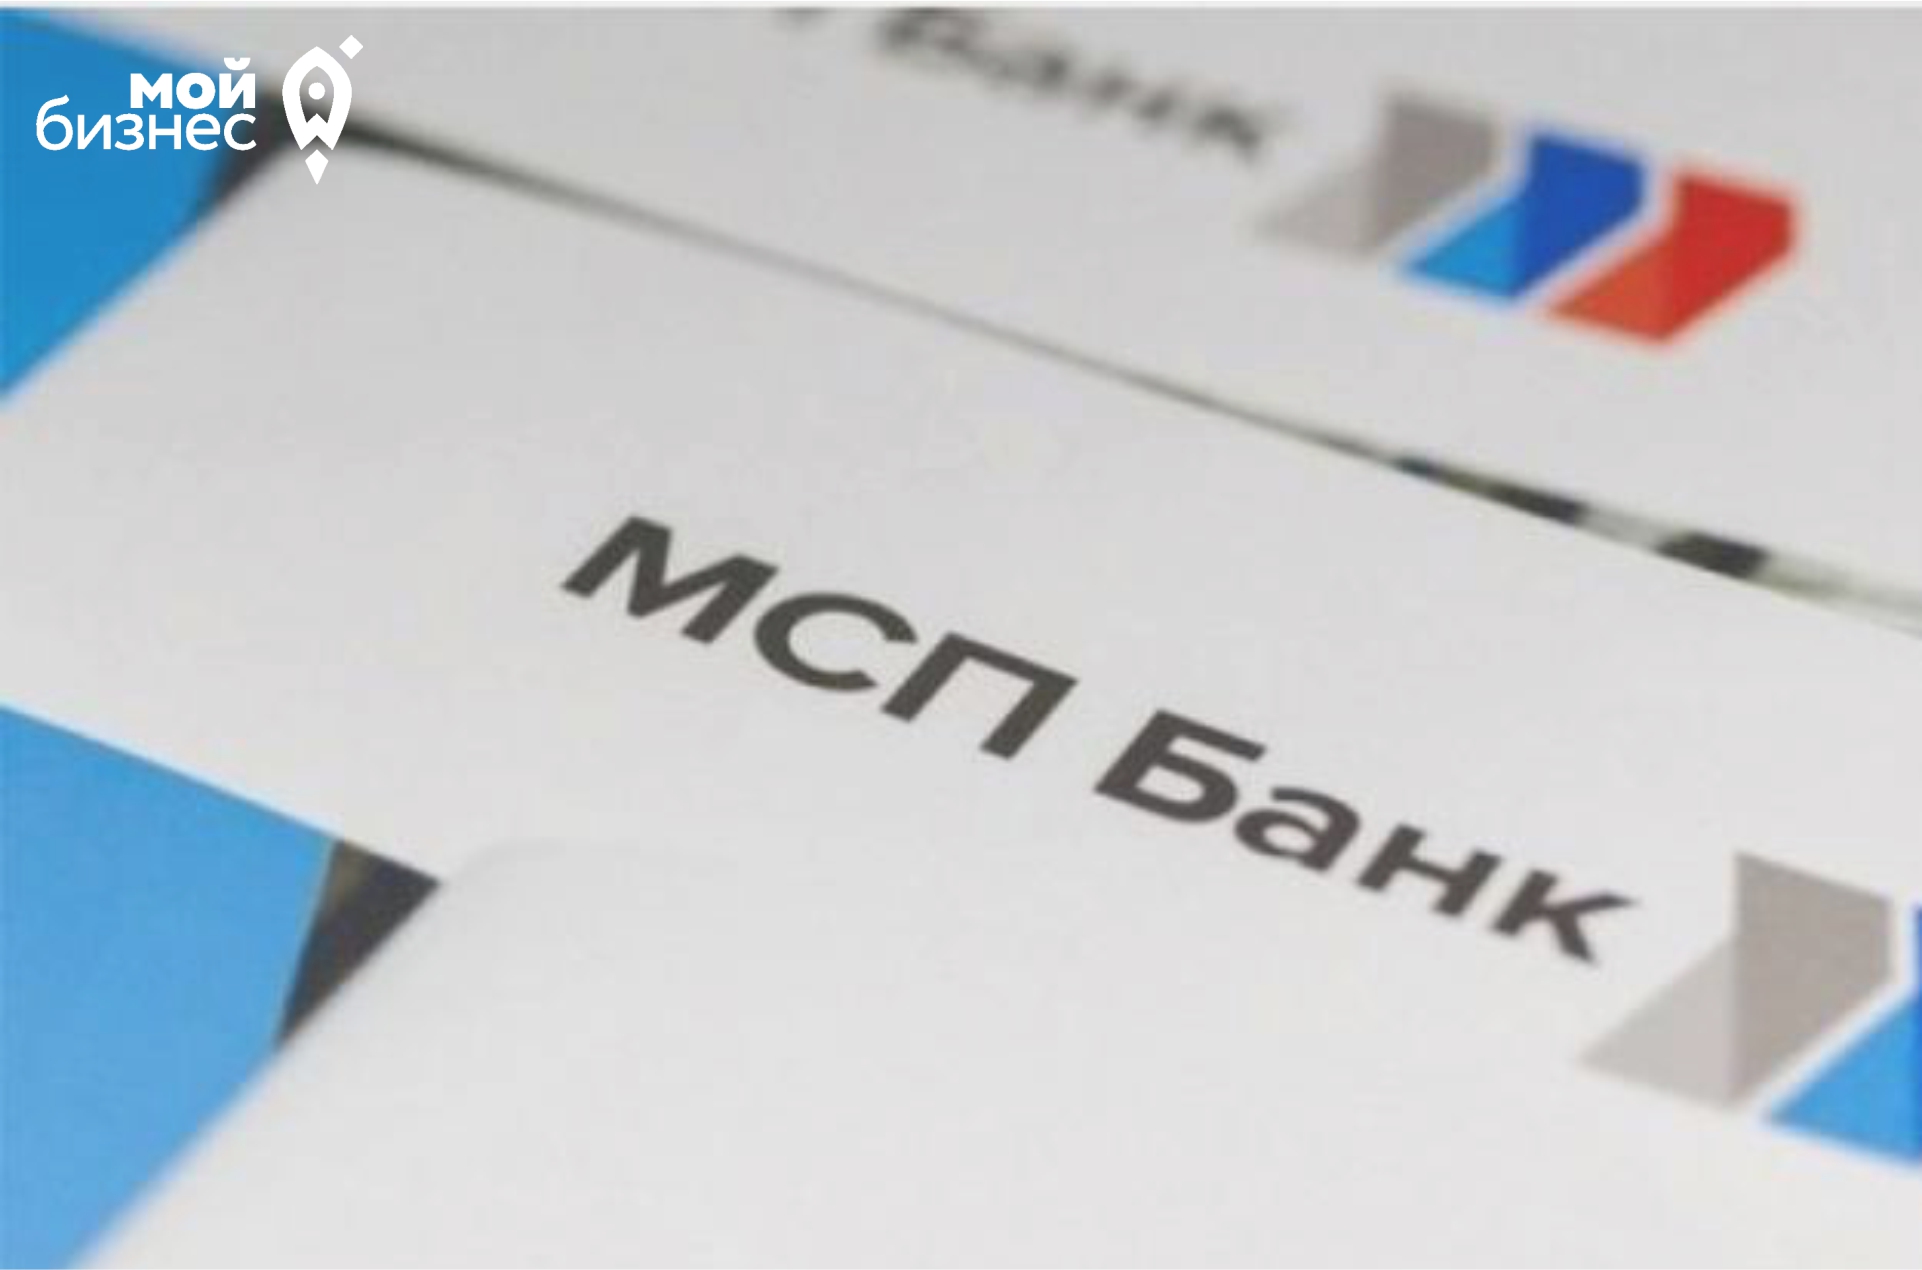 МСП Банк перезапустил льготную программу экспресс-кредитования бизнеса.